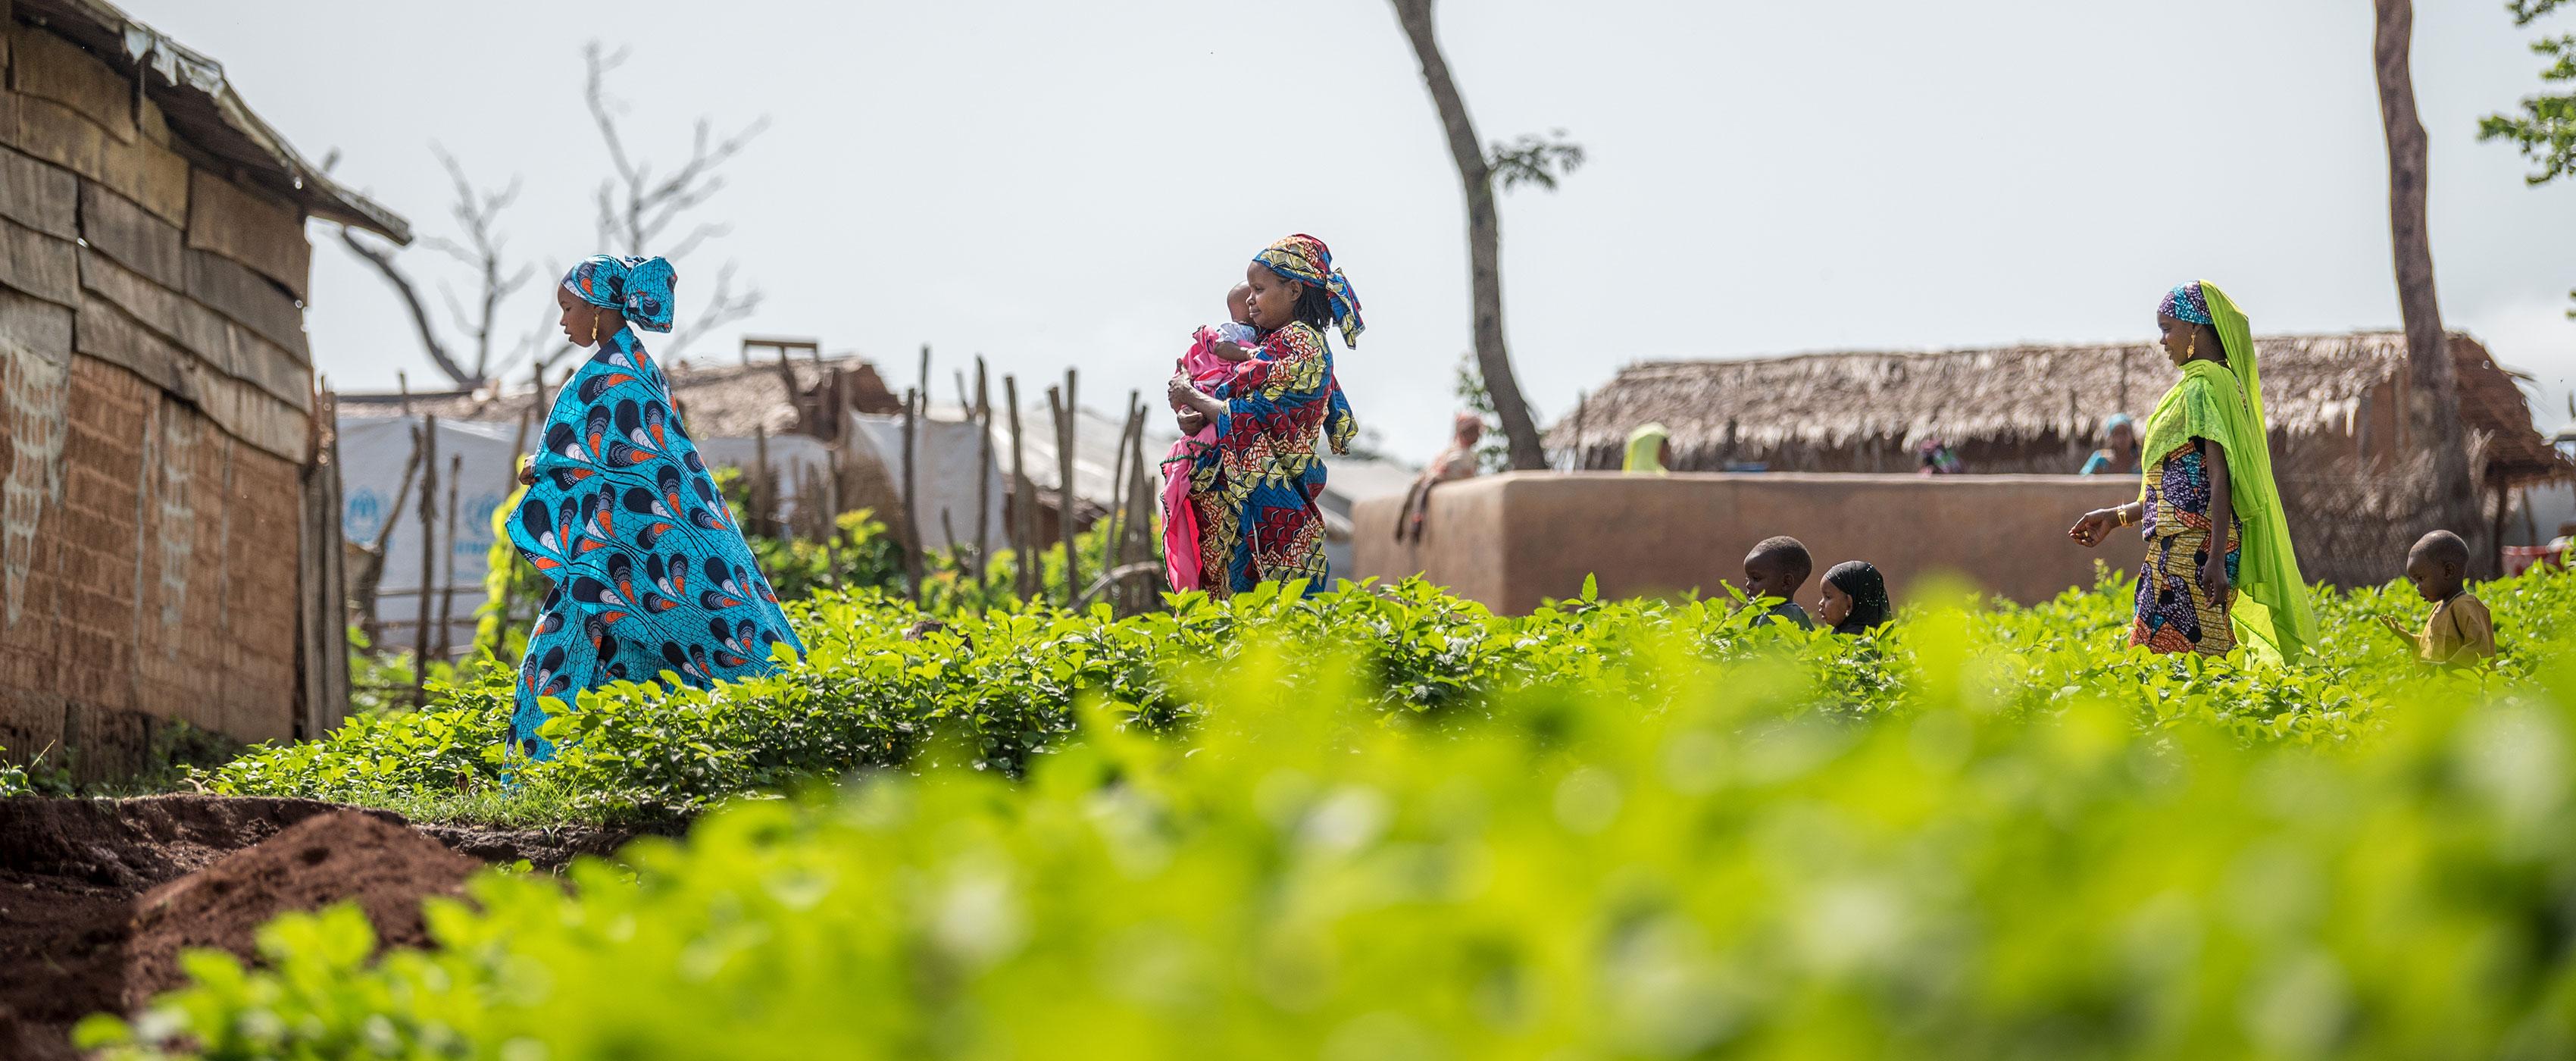 Gefährdete Gruppen, darunter Flüchtlinge, Frauen und Kinder, sind ebenfalls überdurchschnittlich stark vom Klimawandel betroffen. Das vom LWB unterstützte Flüchtlingslager Gado im Osten Kameruns beherbergt mehr als 25.000 Flüchtlinge aus der benachbarten Zentralafrikanischen Republik. Foto: LWB/Albin Hillert